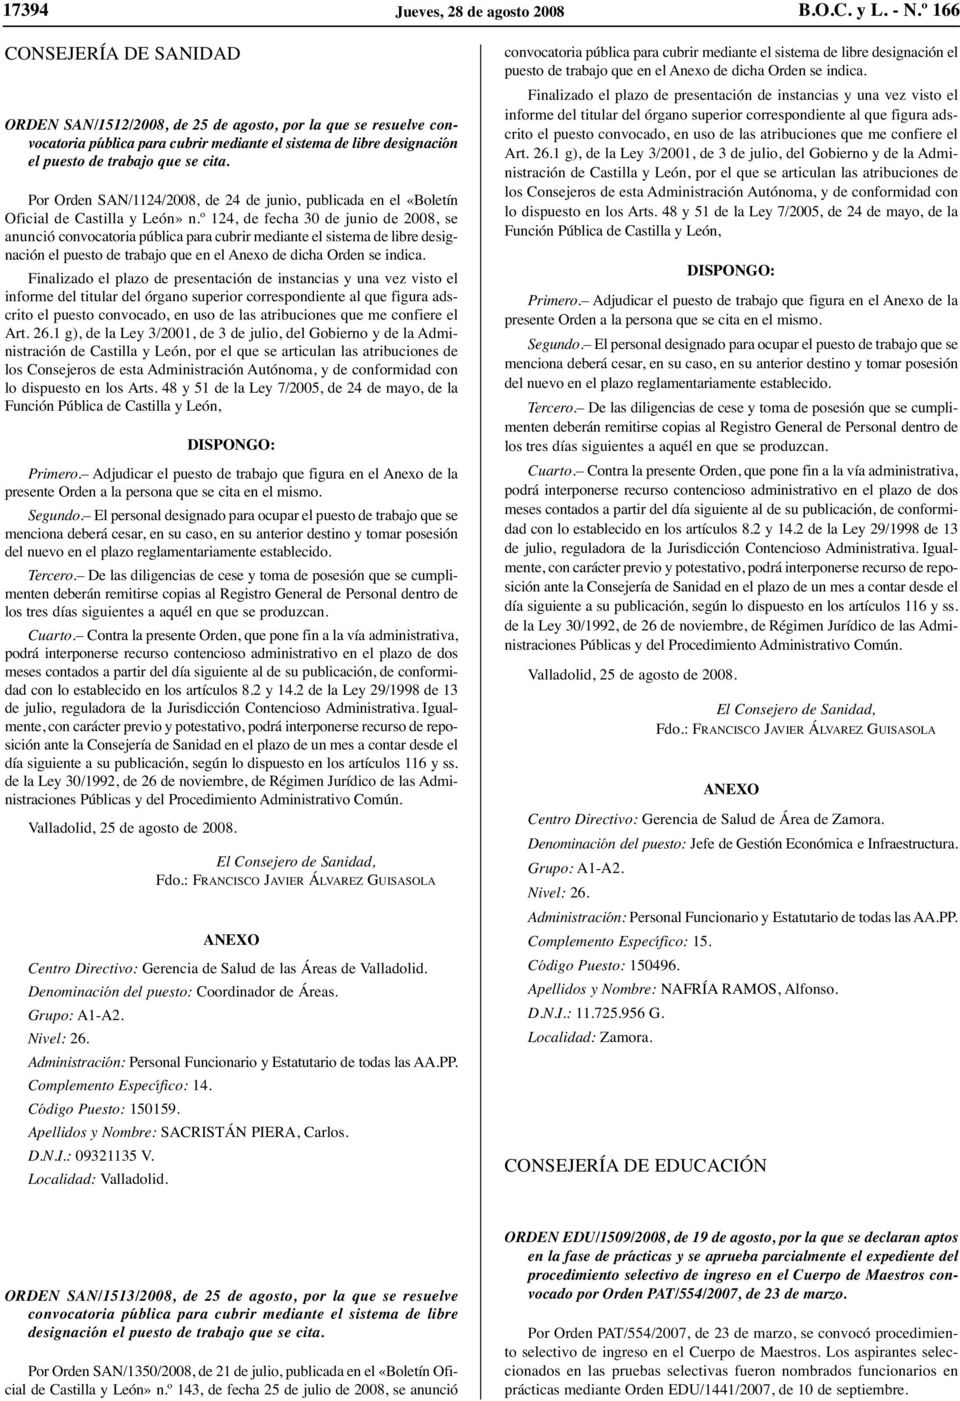 Por Orden SAN/1124/2008, de 24 de junio, publicada en el «Boletín Oficial de Castilla y León» n.